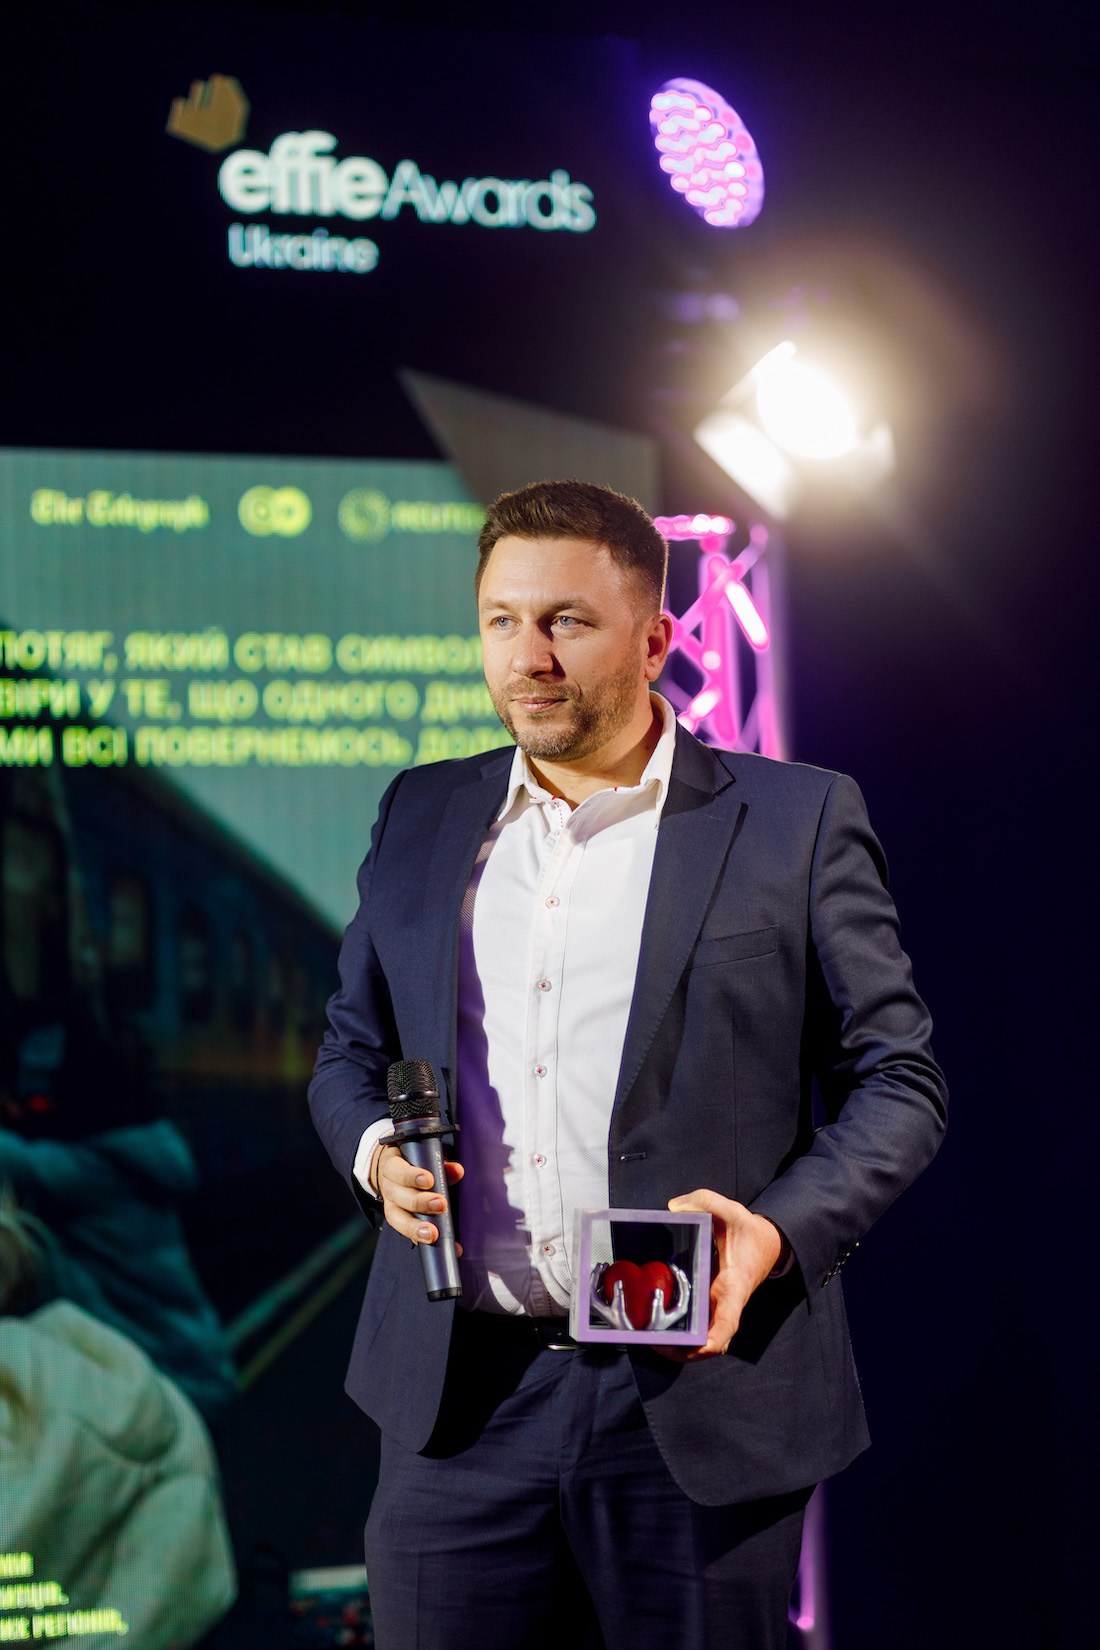 FAVBET та Всеукраїнська рекламна коаліція на Effie Awards нагородили Укрзалізницю спеціальною відзнакою 